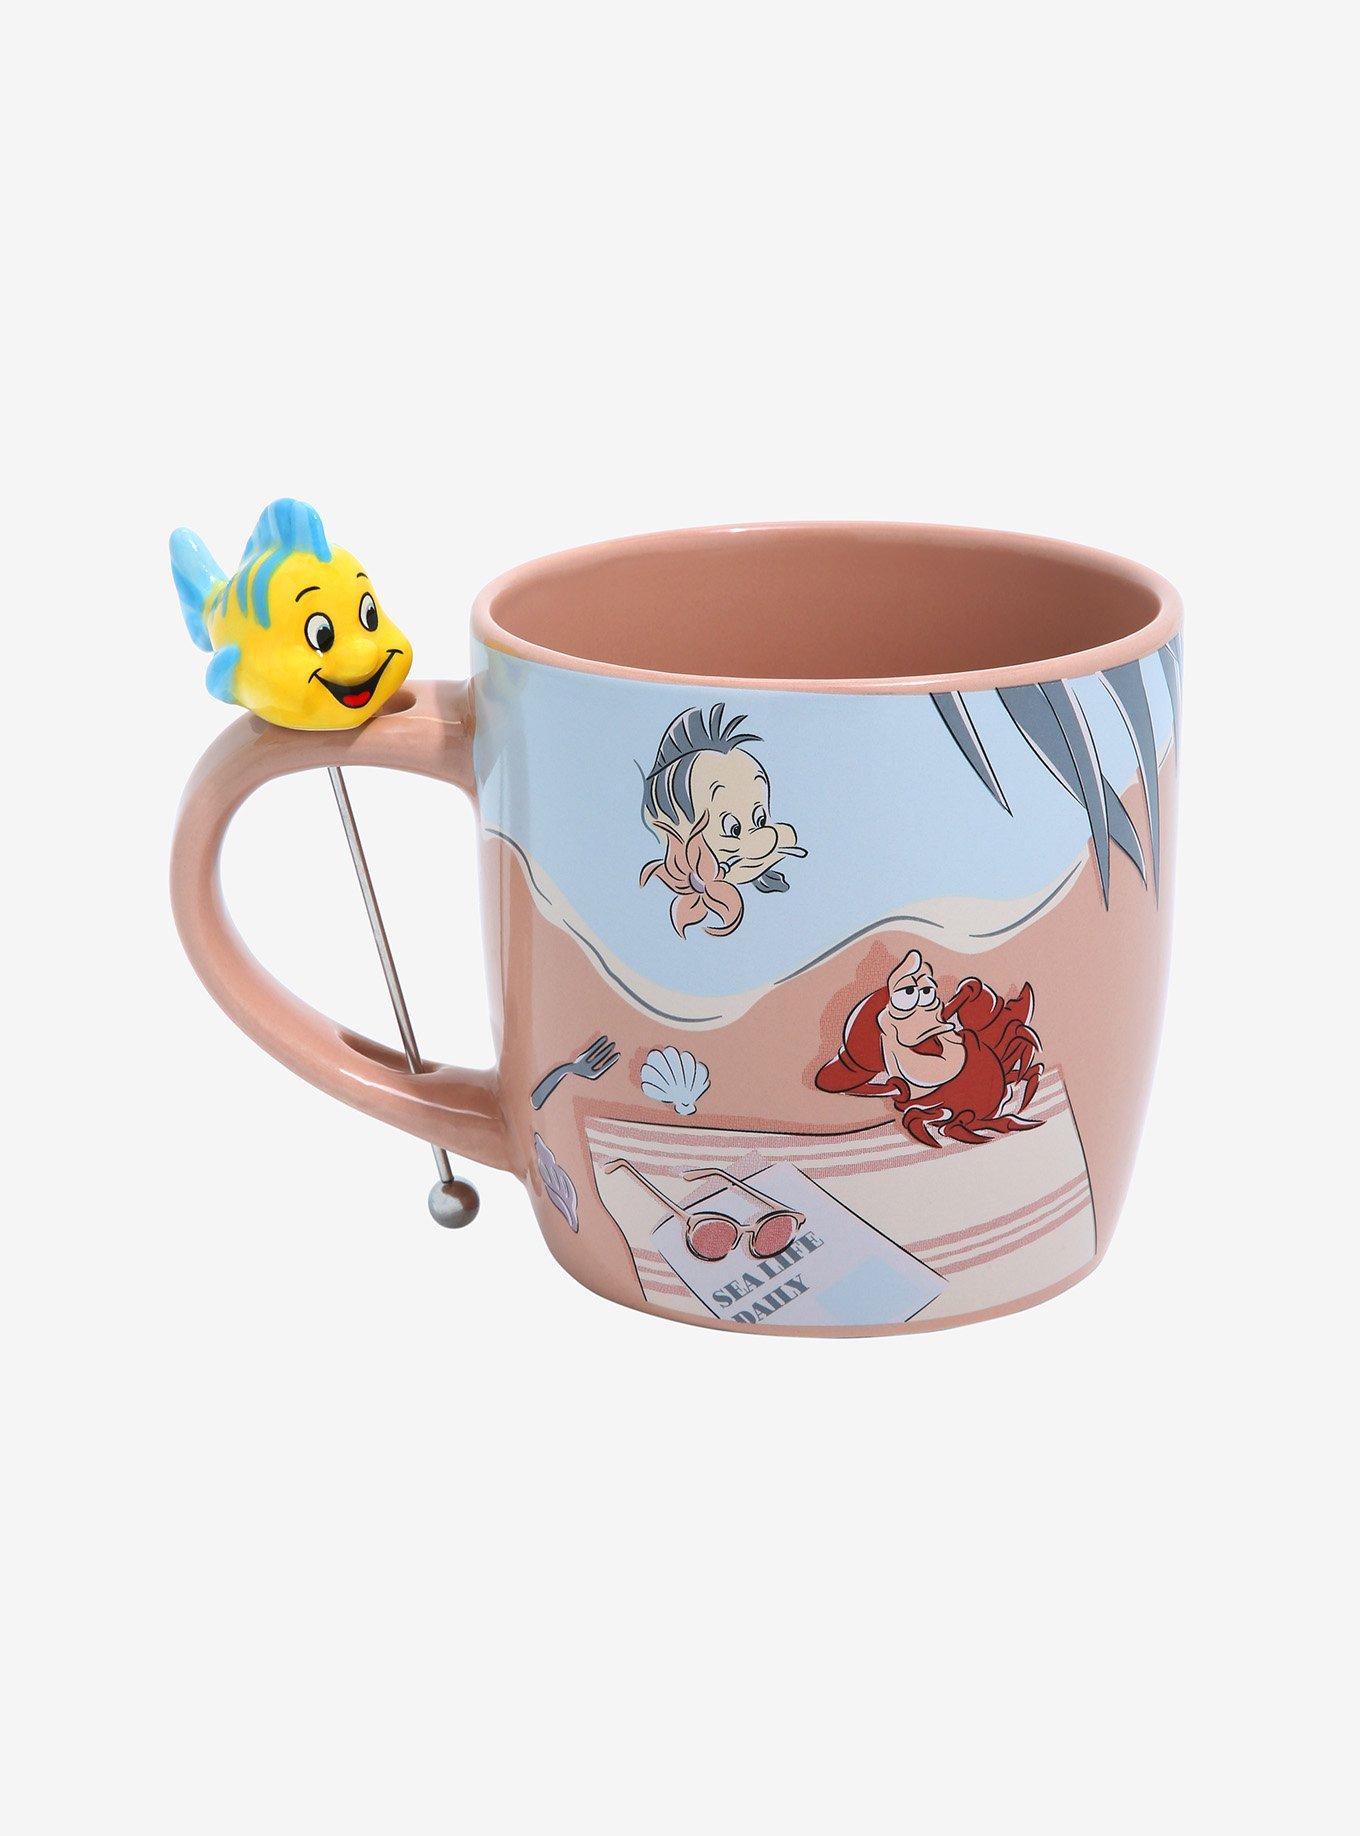 Little Mermaid Ariel & Flounder Mug Cup Cute Disney Store Japan –